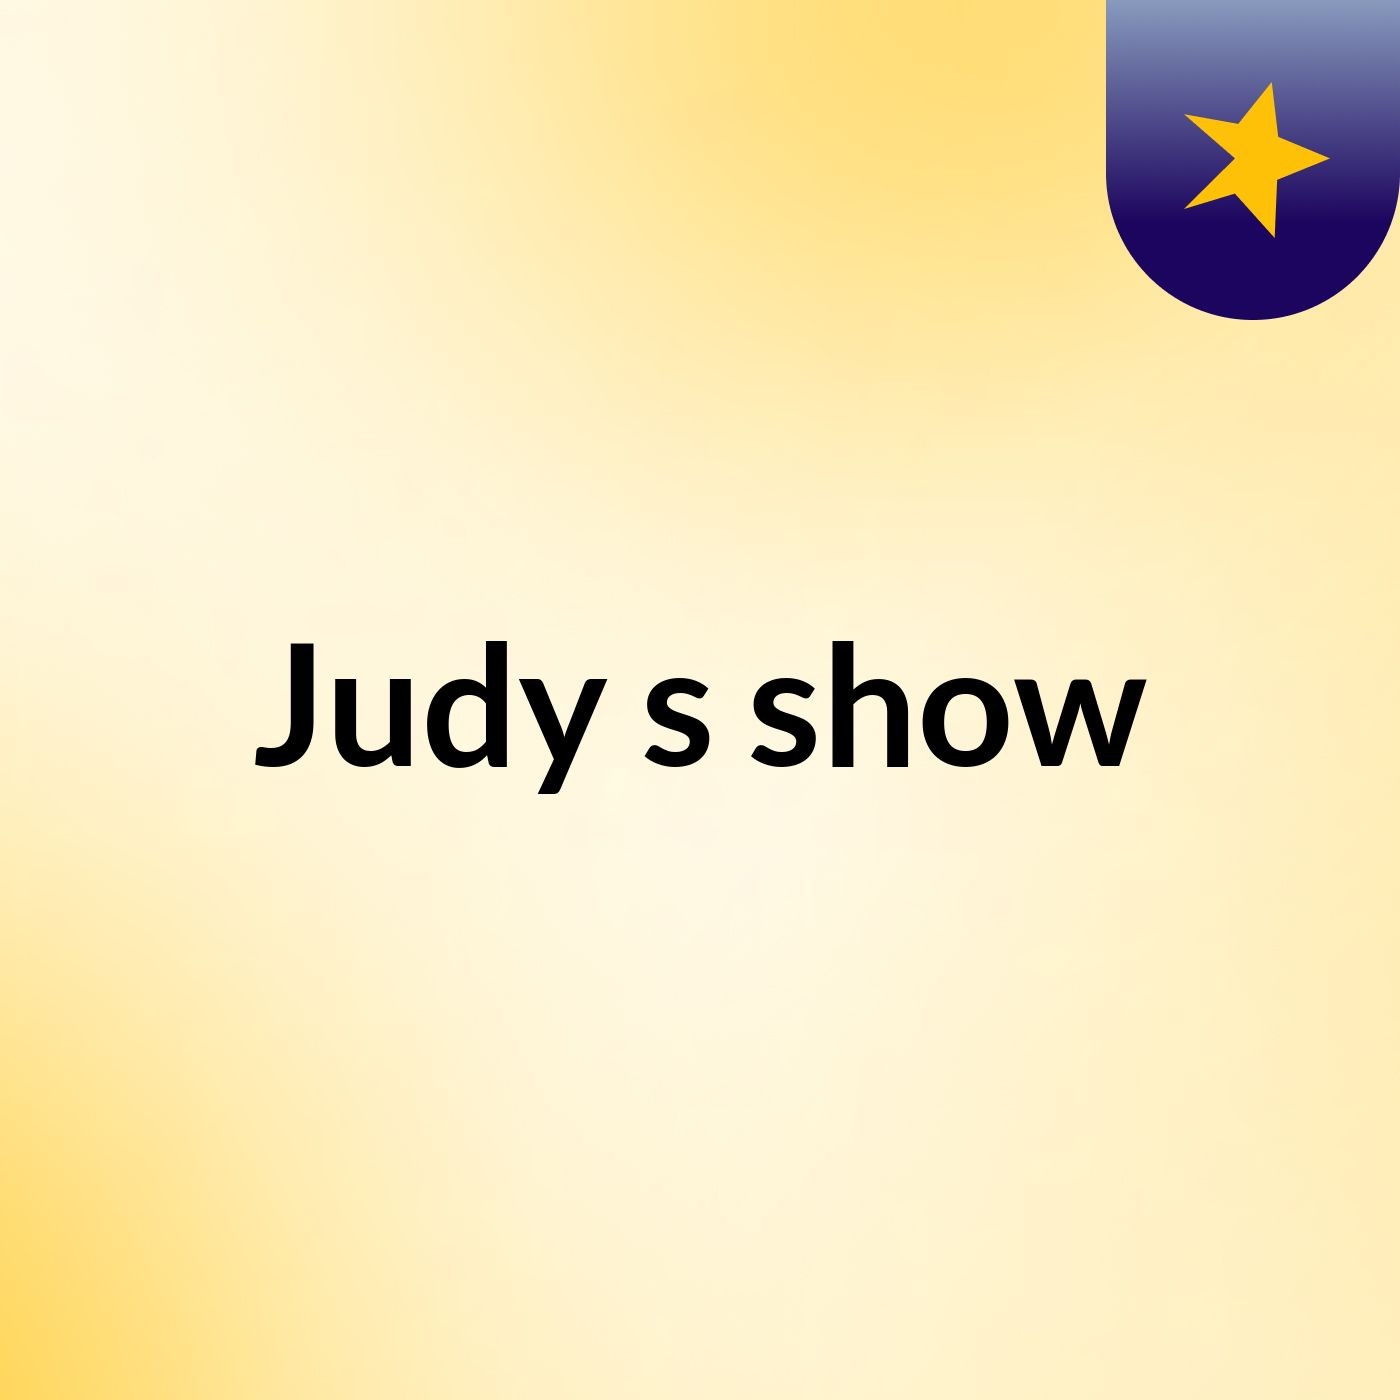 Judy's show